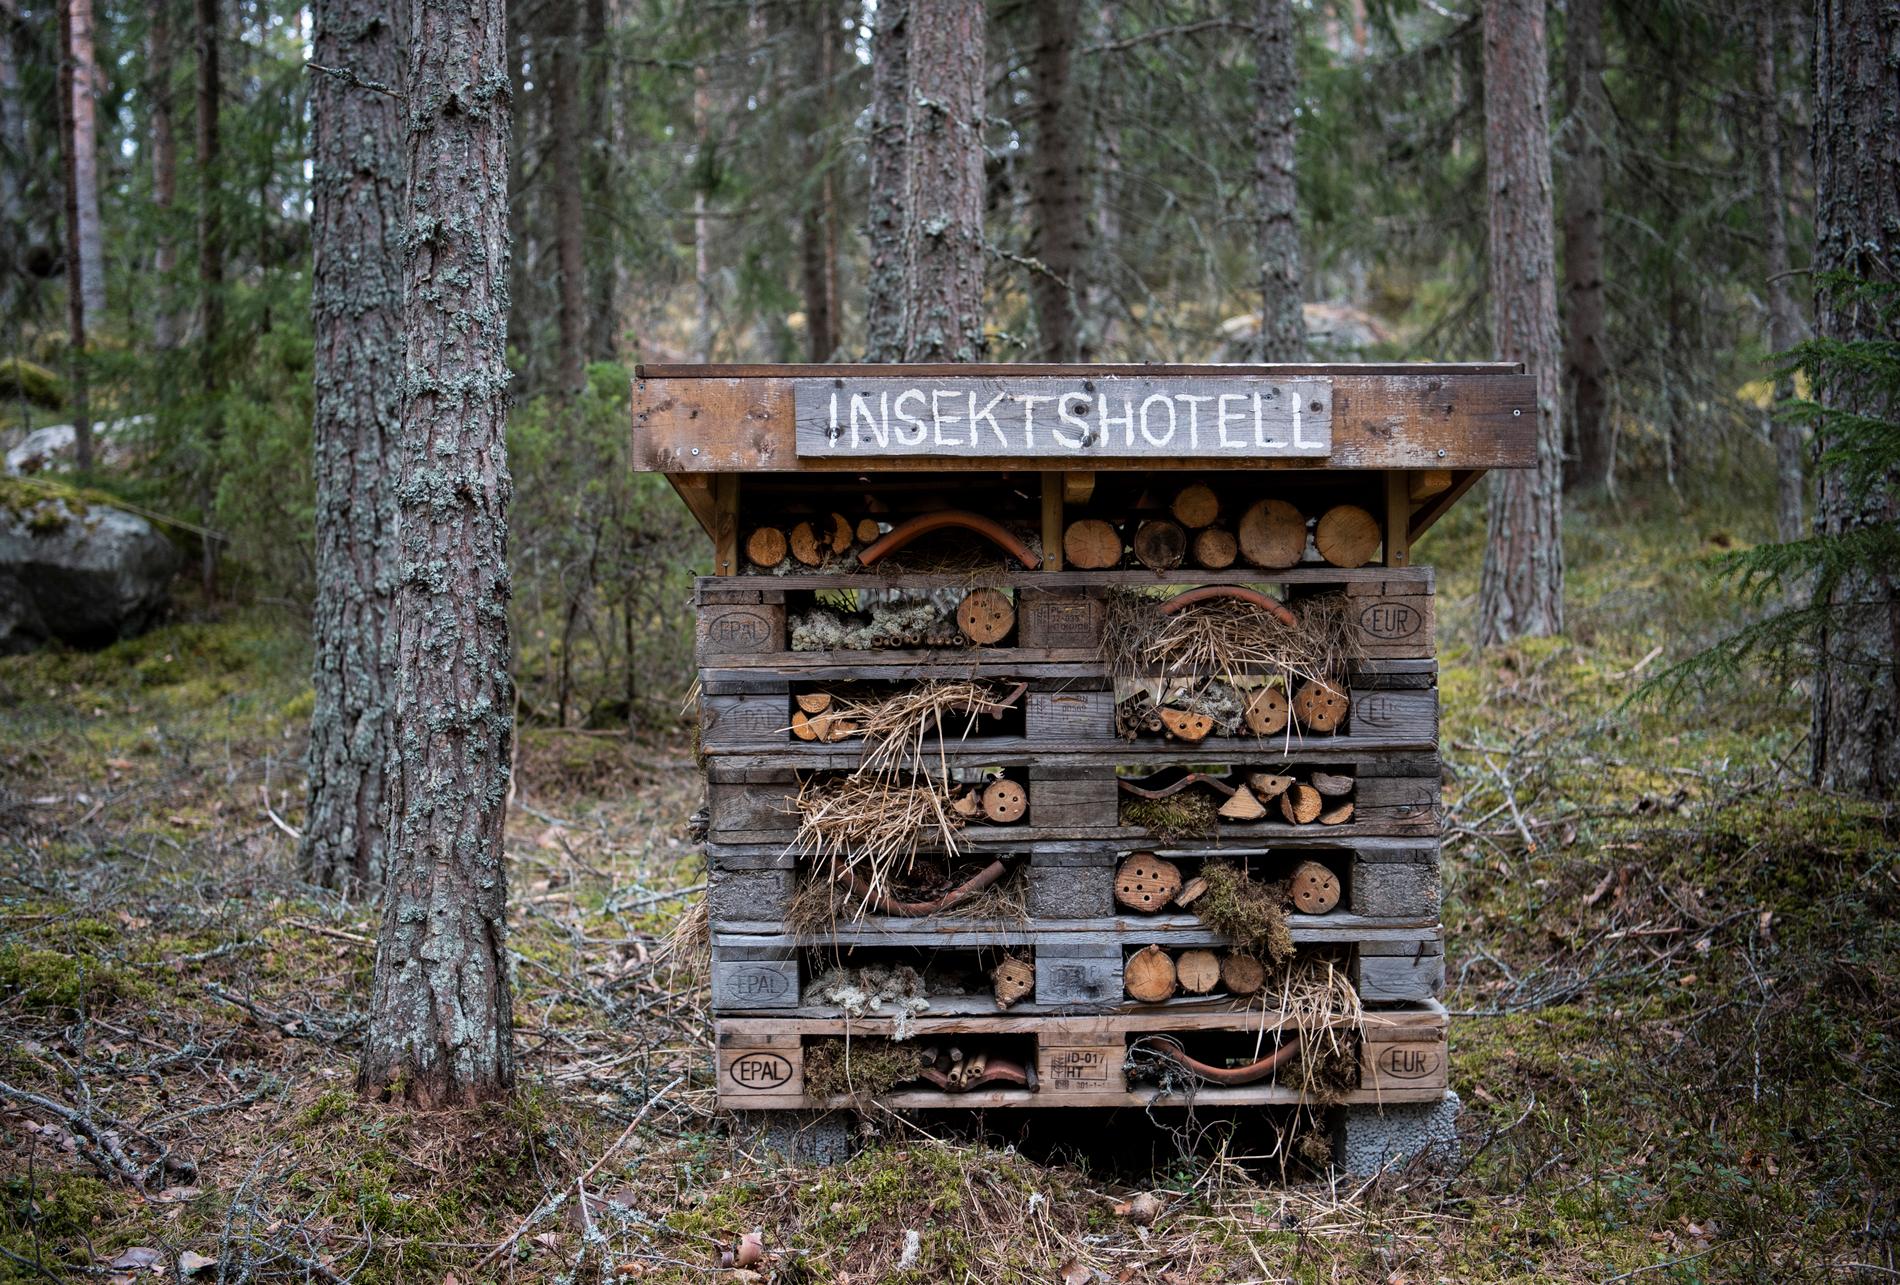 Insektshotellet på Järvzoo i Järvsö är fullbelagt trots coronakrisen.